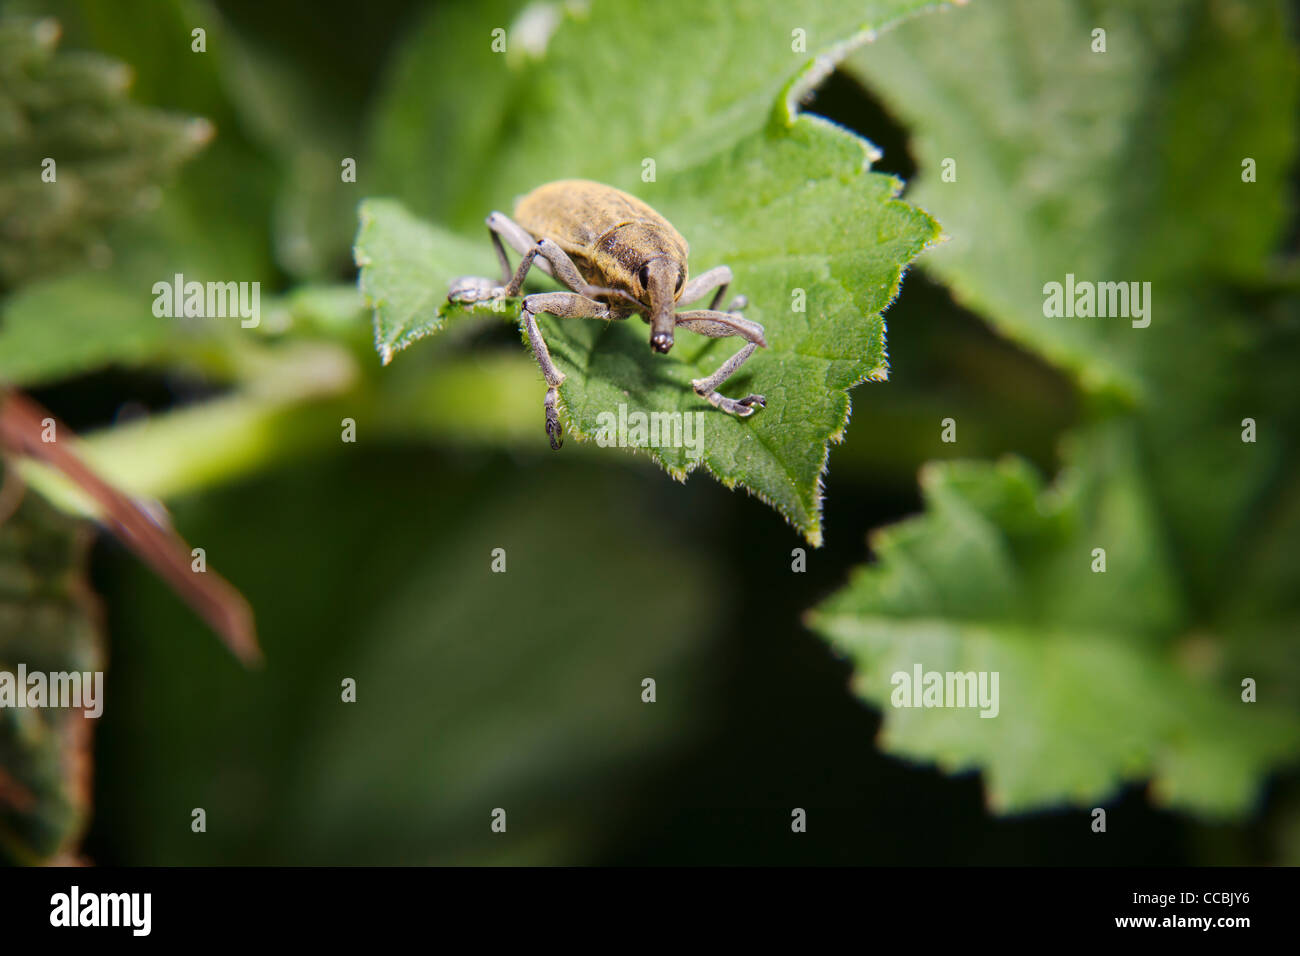 Weevil (Lixus angustatus) on leaf Stock Photo